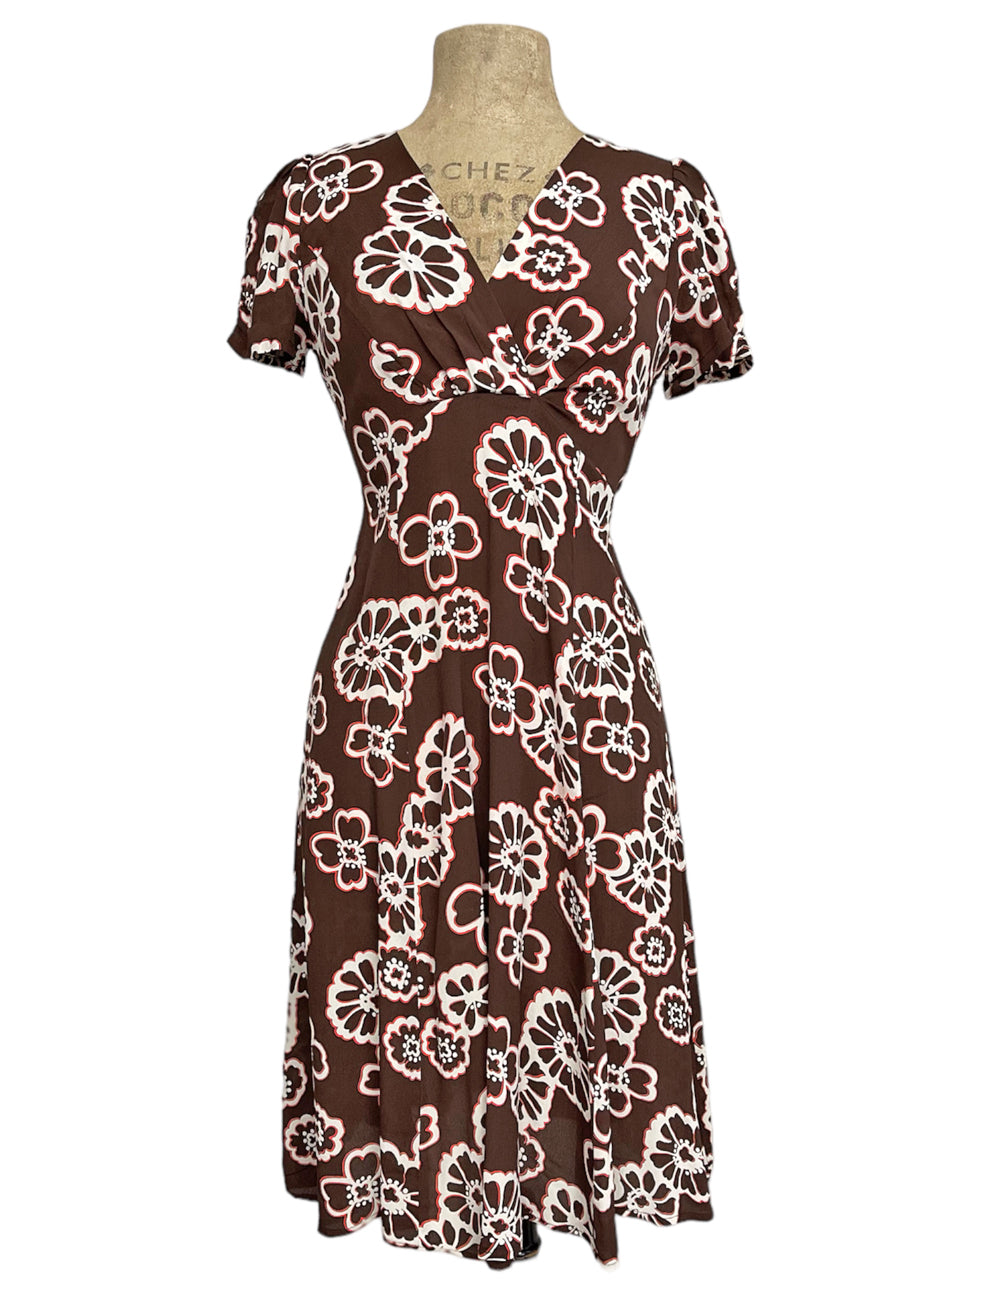 Brown Groovy Floral Vintage Inspired Rita Dress